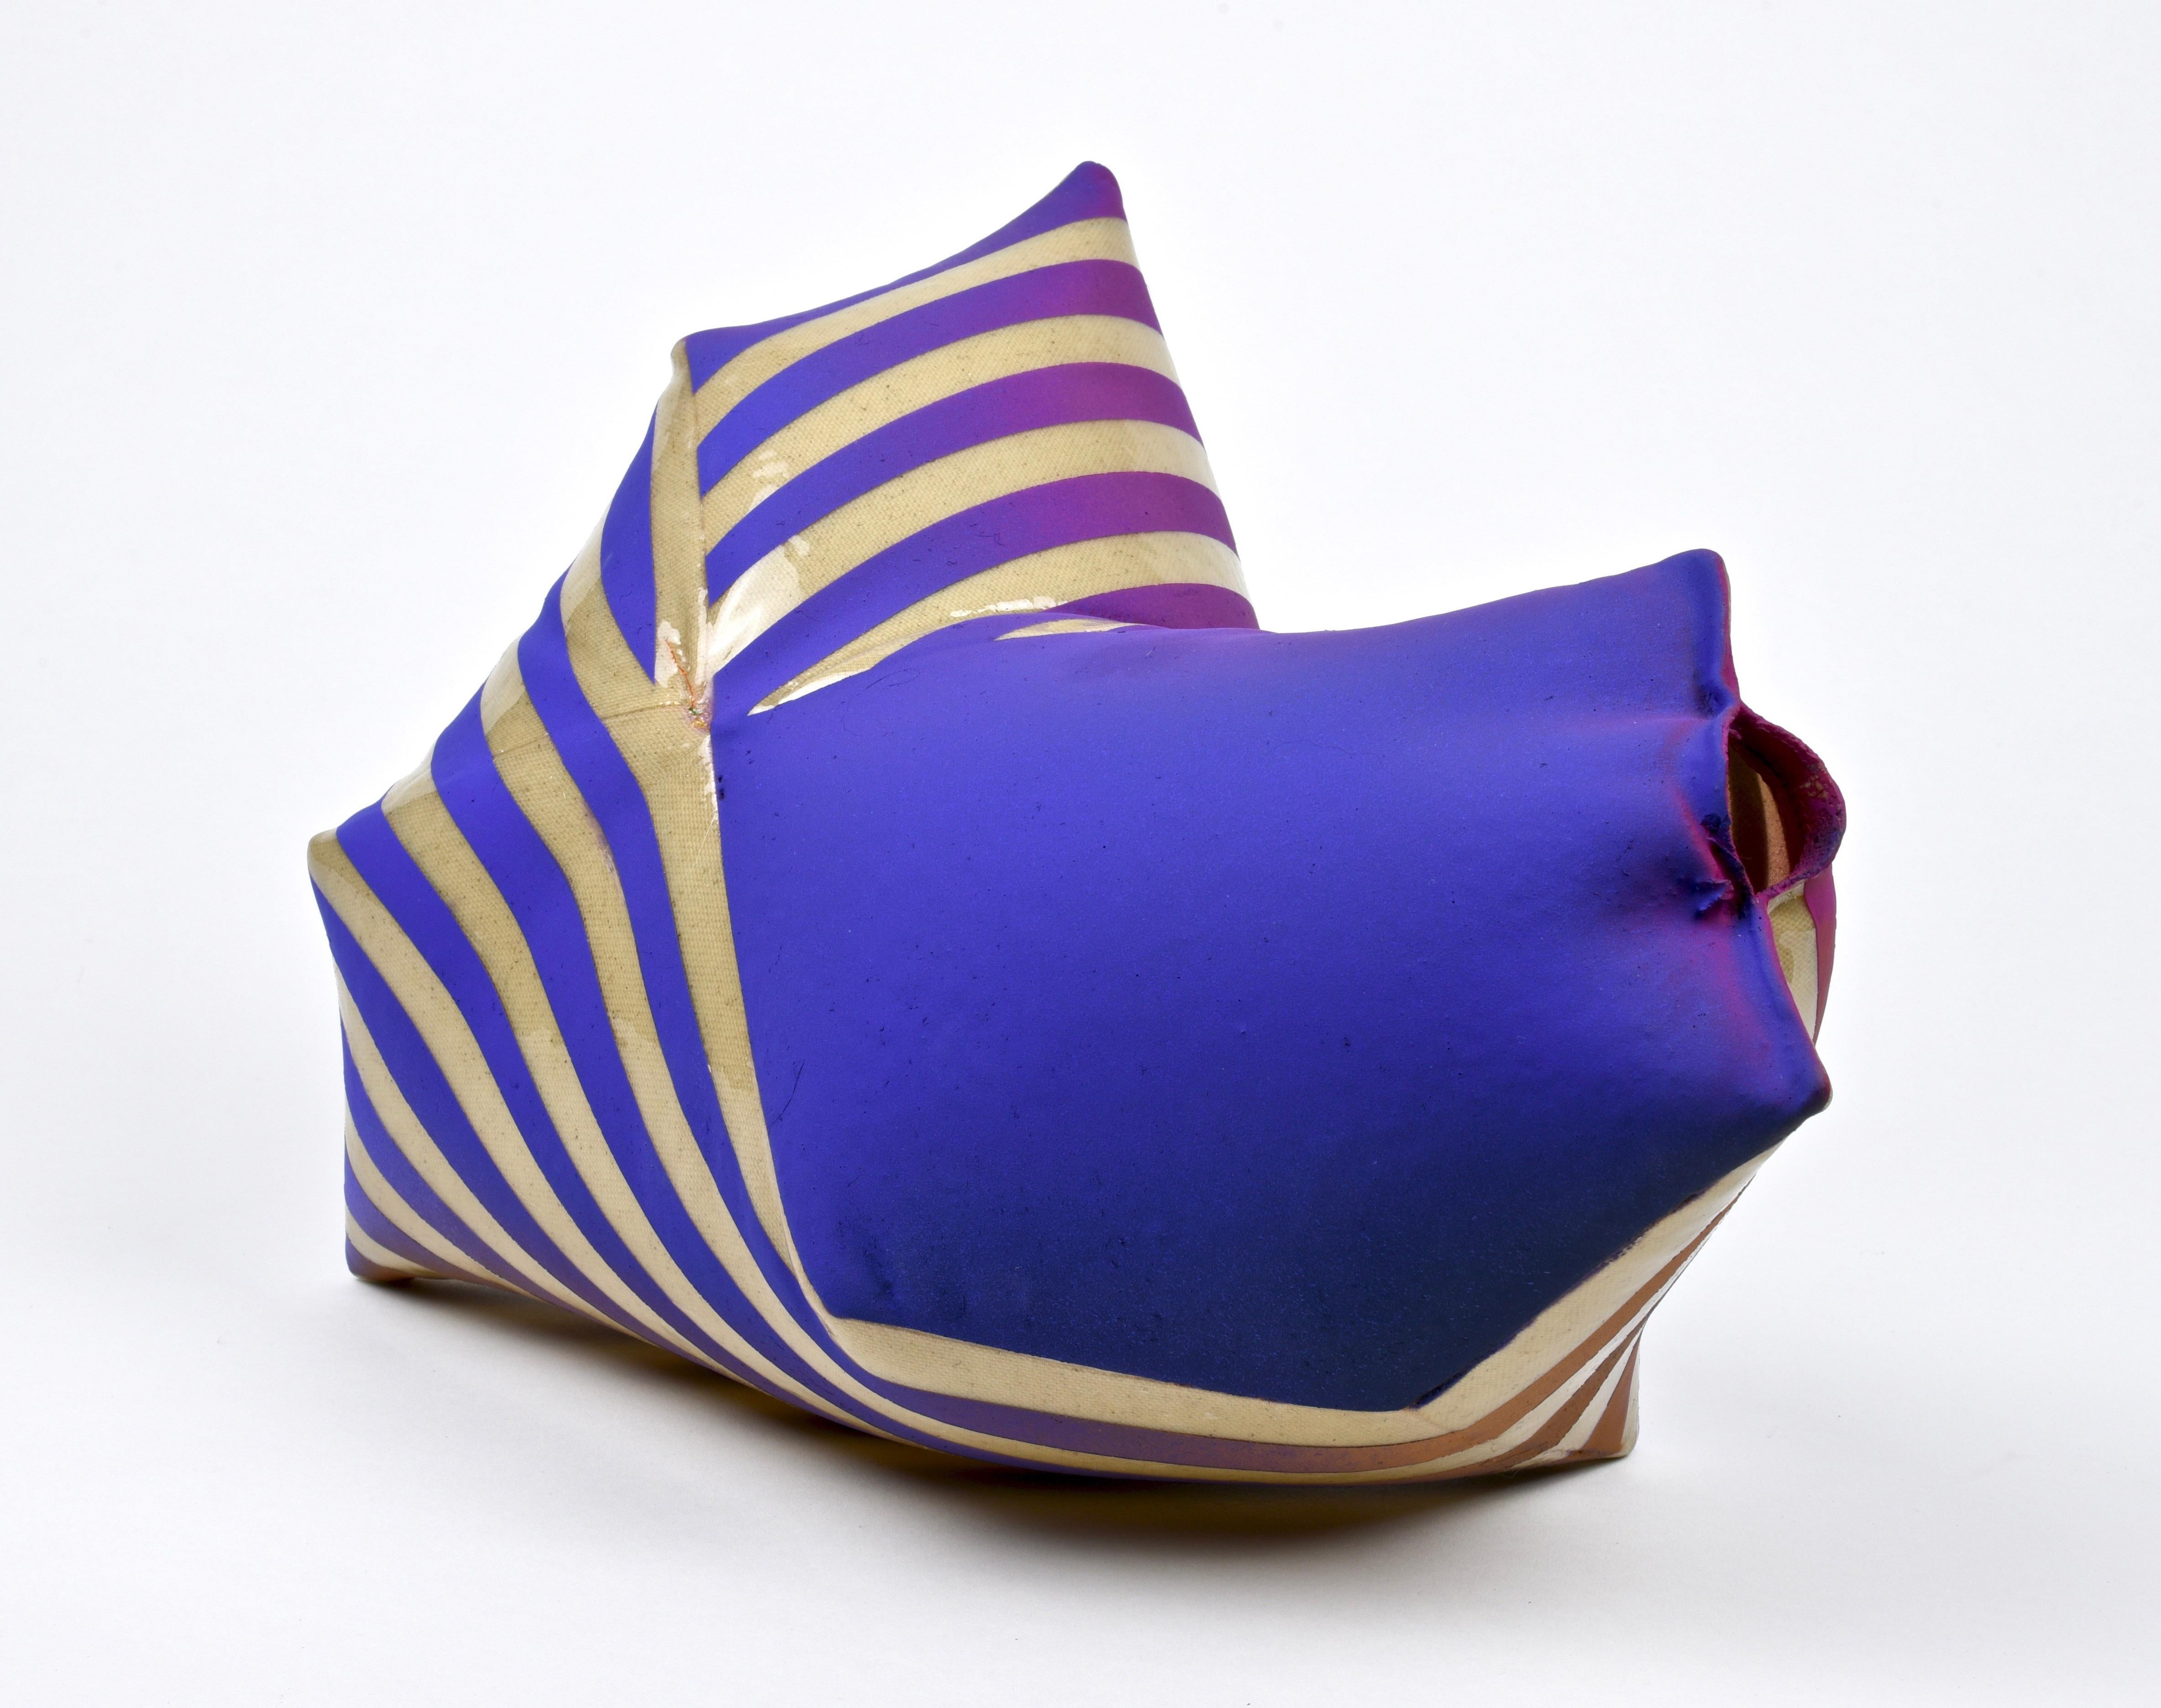 Jeremy Thomas Abstract Sculpture - Betelgeuse Purple